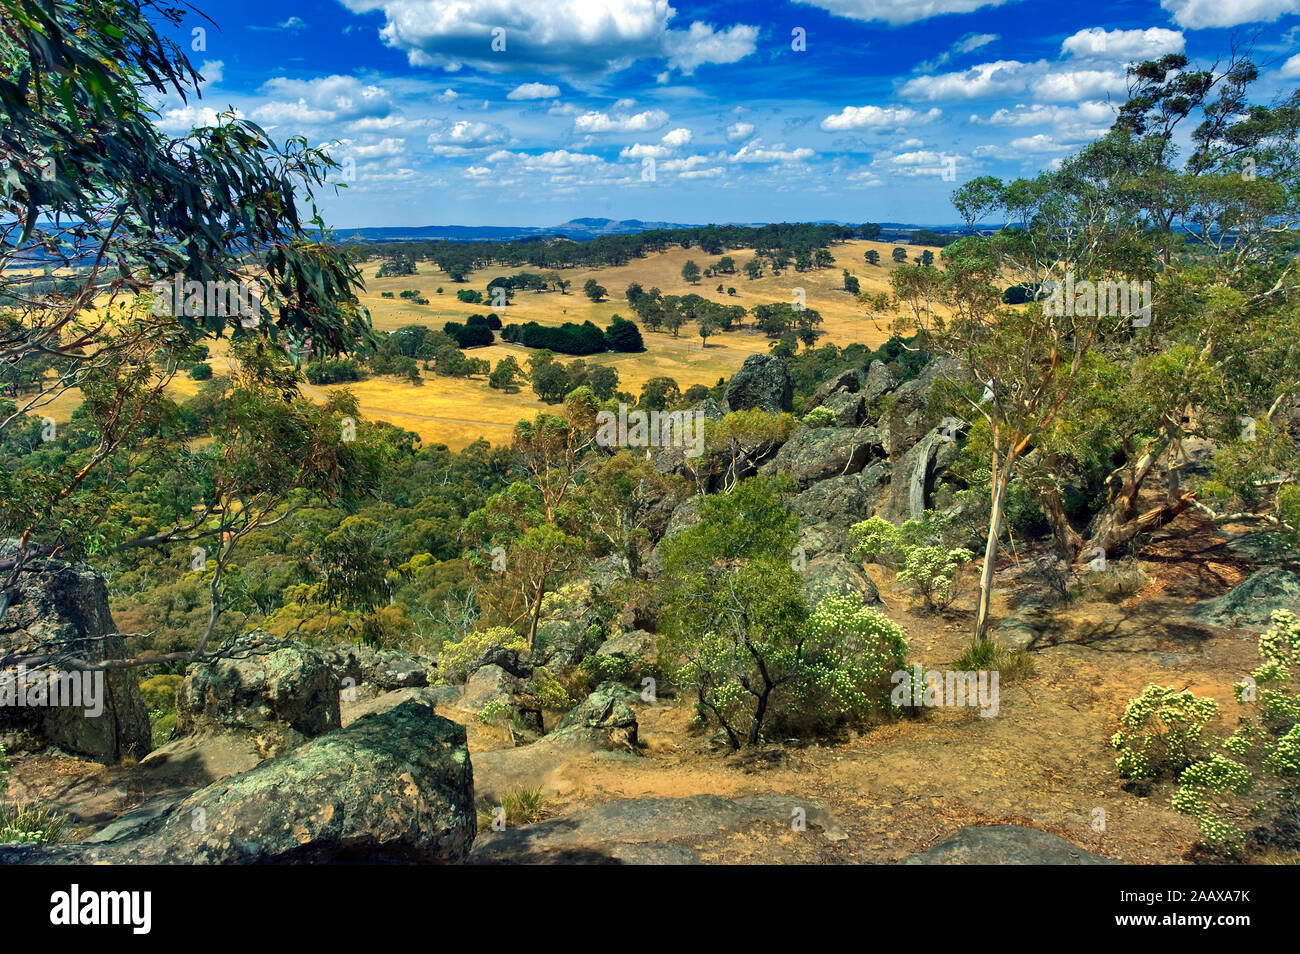 Una vista desde el rock, colgantes o Mt Diógenes, cerca monte macedonia en Australia. Esto hizo famoso por el libro y la película "picnic al ahorcamiento rock' de